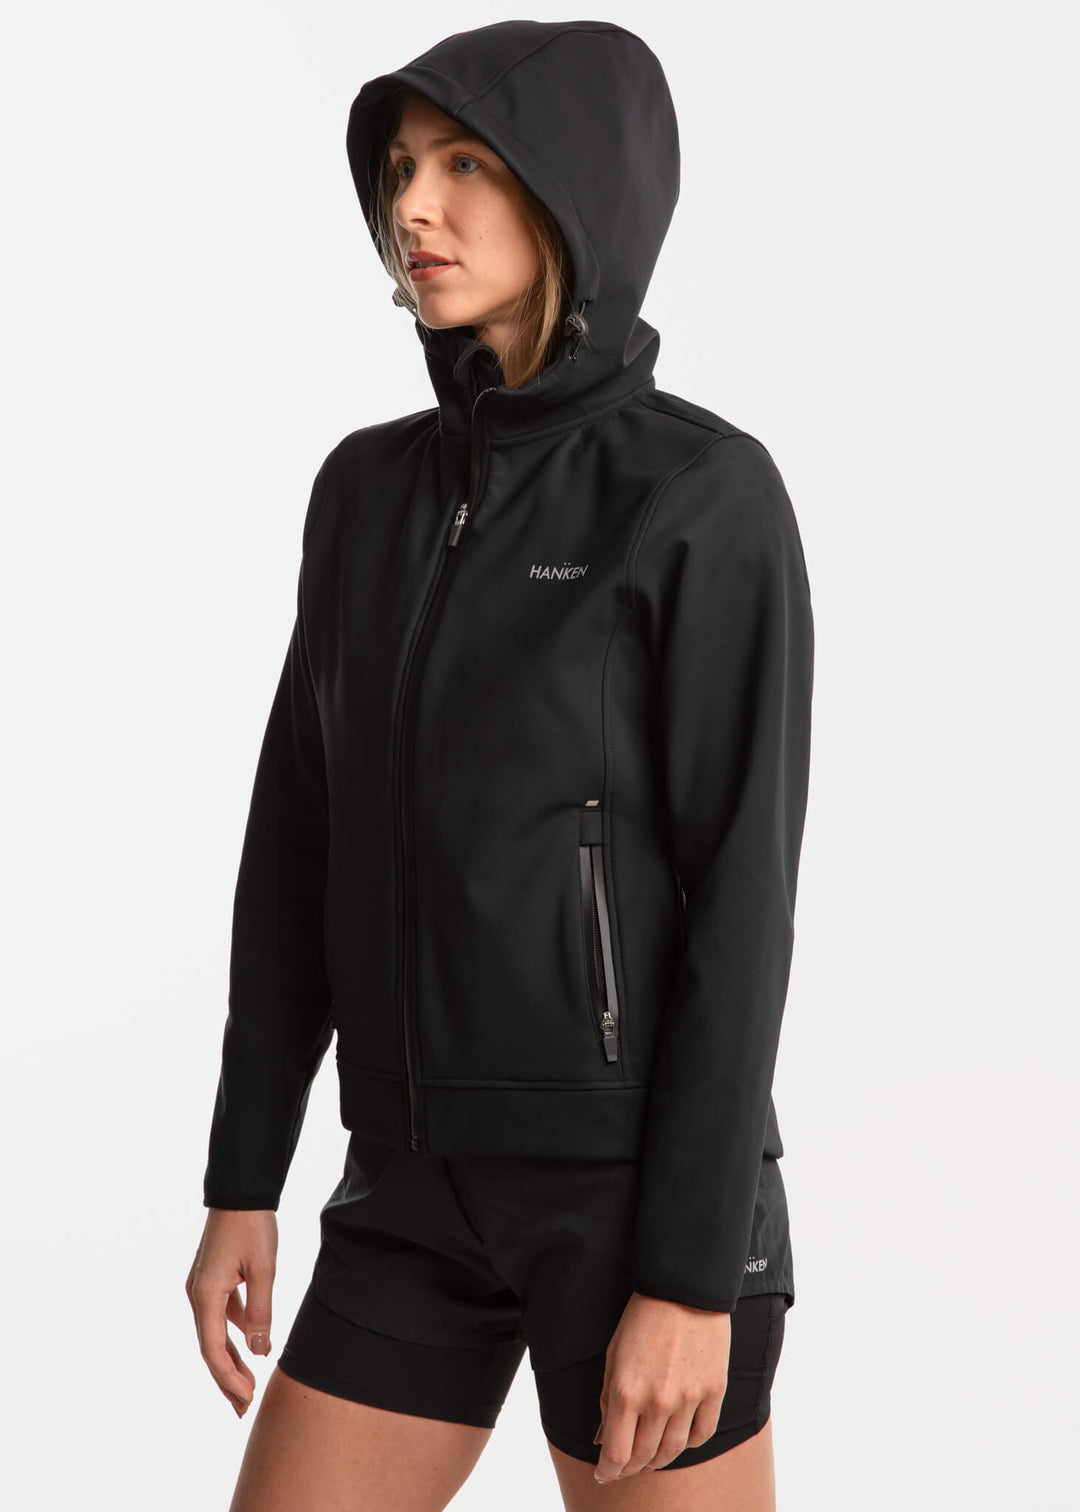 Jacket Tech HANKEN – Women Soft Shell